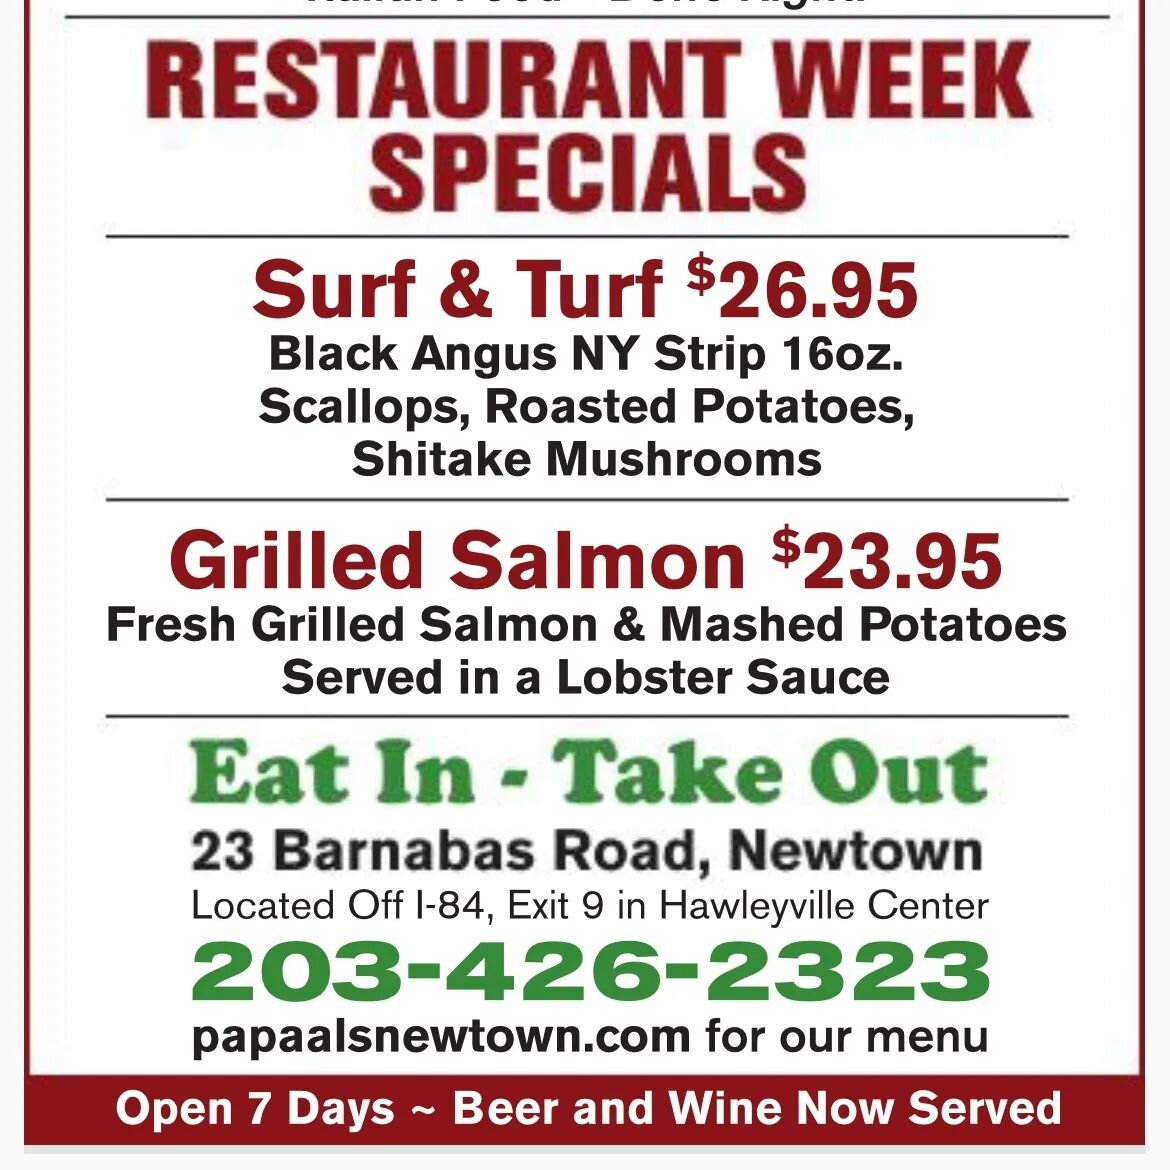 Newtown Restaurant week is finally here! Stop on by! #newtownct #newtownrestaurantweek #newtownrestaurant #fairfieldcounty #specials #cteats #bethelct #brookfieldct